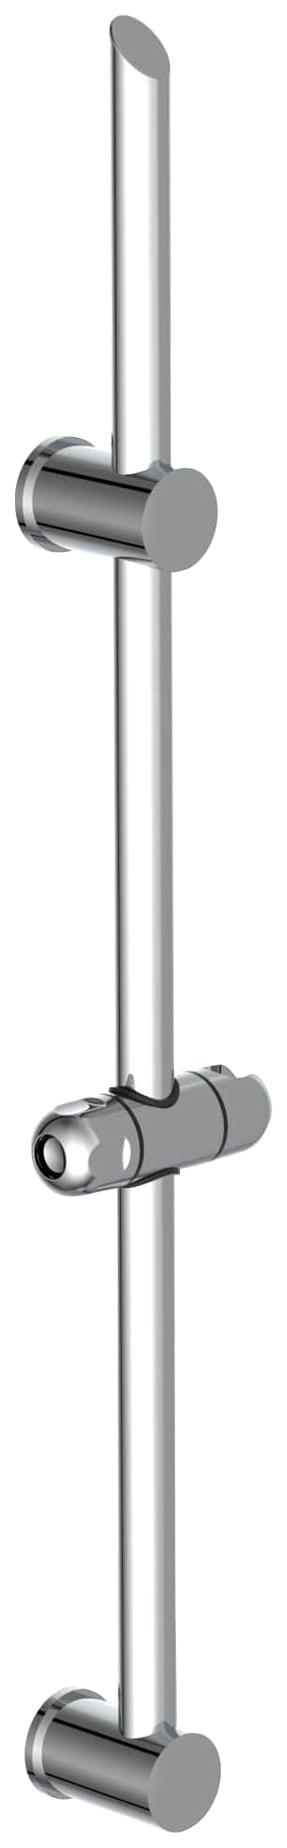 Duschstange »SIGNO«, 70cm, Duschstange mit höhenverstellbarer Wandhalterung, Chrom